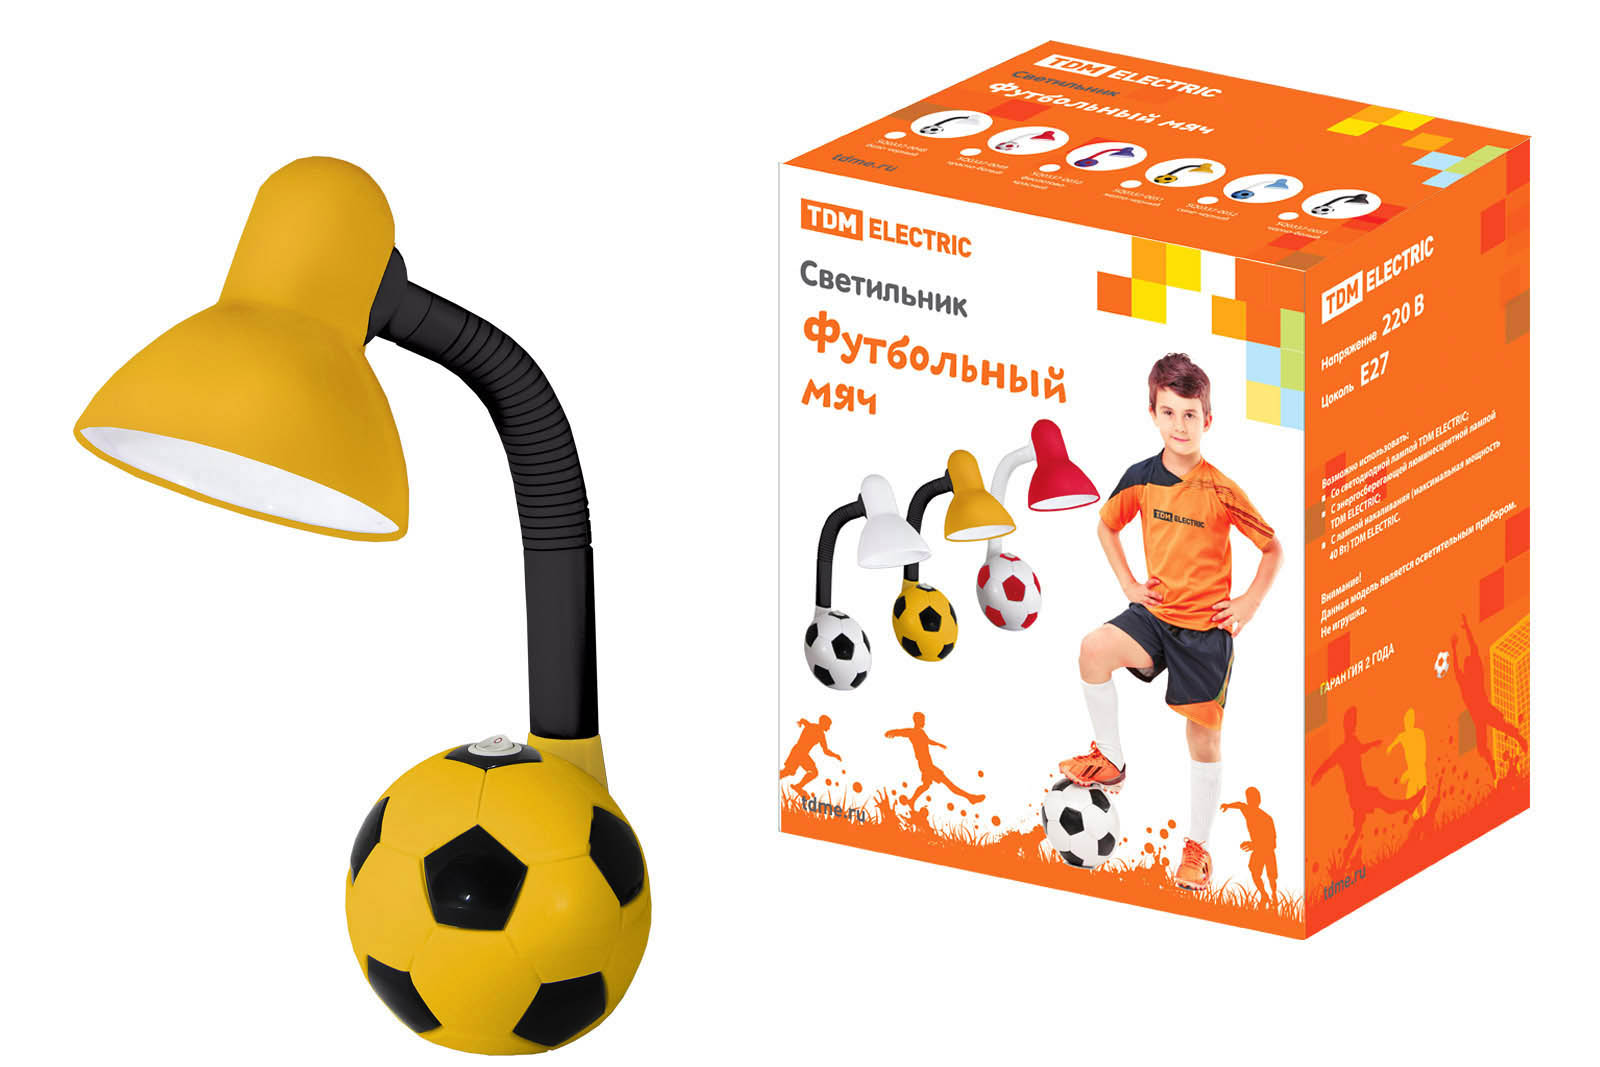 светильник футбольный мяч настол. 40вт е27 желто-черный tdm от BTSprom.by